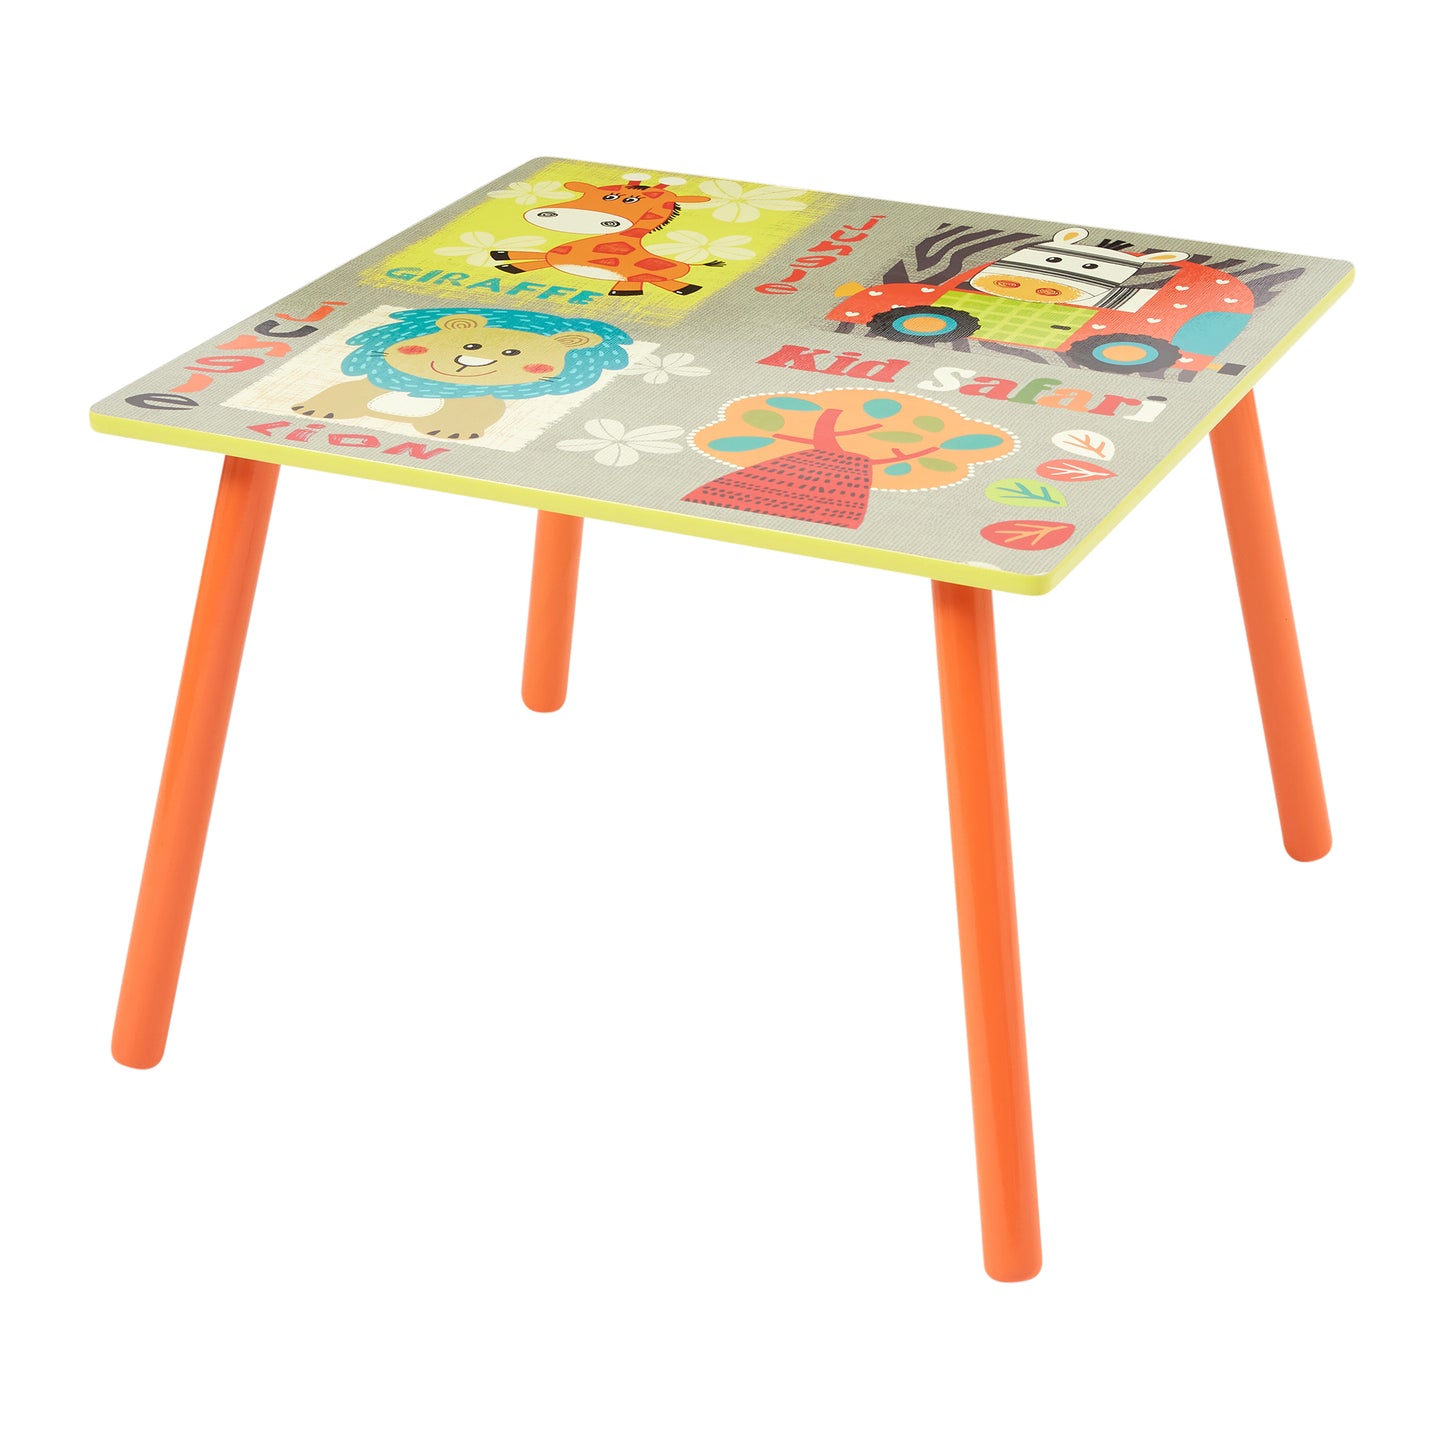 Kid Safari Table and Chair Set